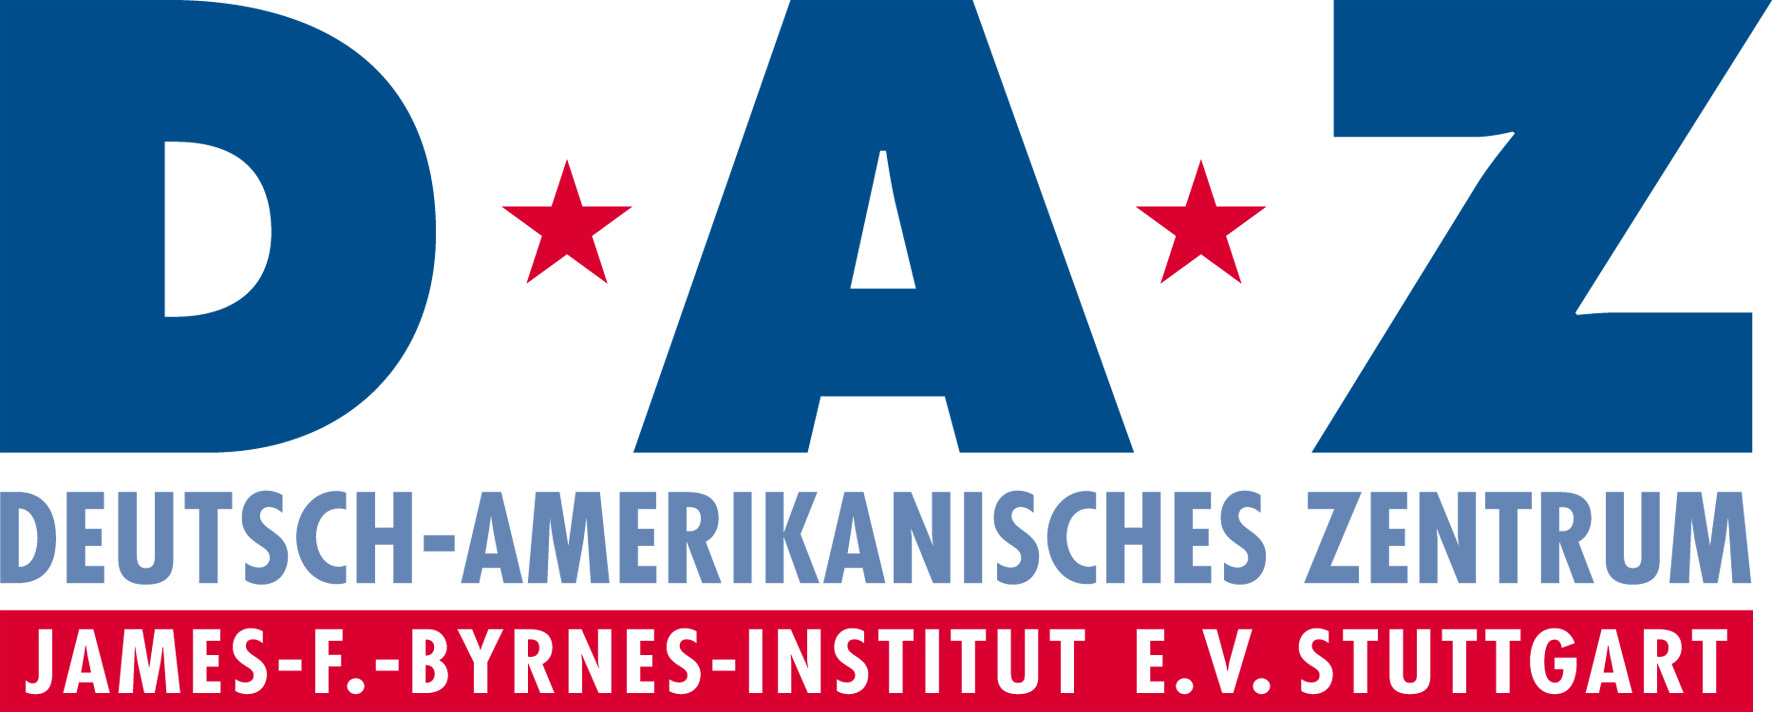 Deutsch-Amerikanisches Zentrum Stuttgart